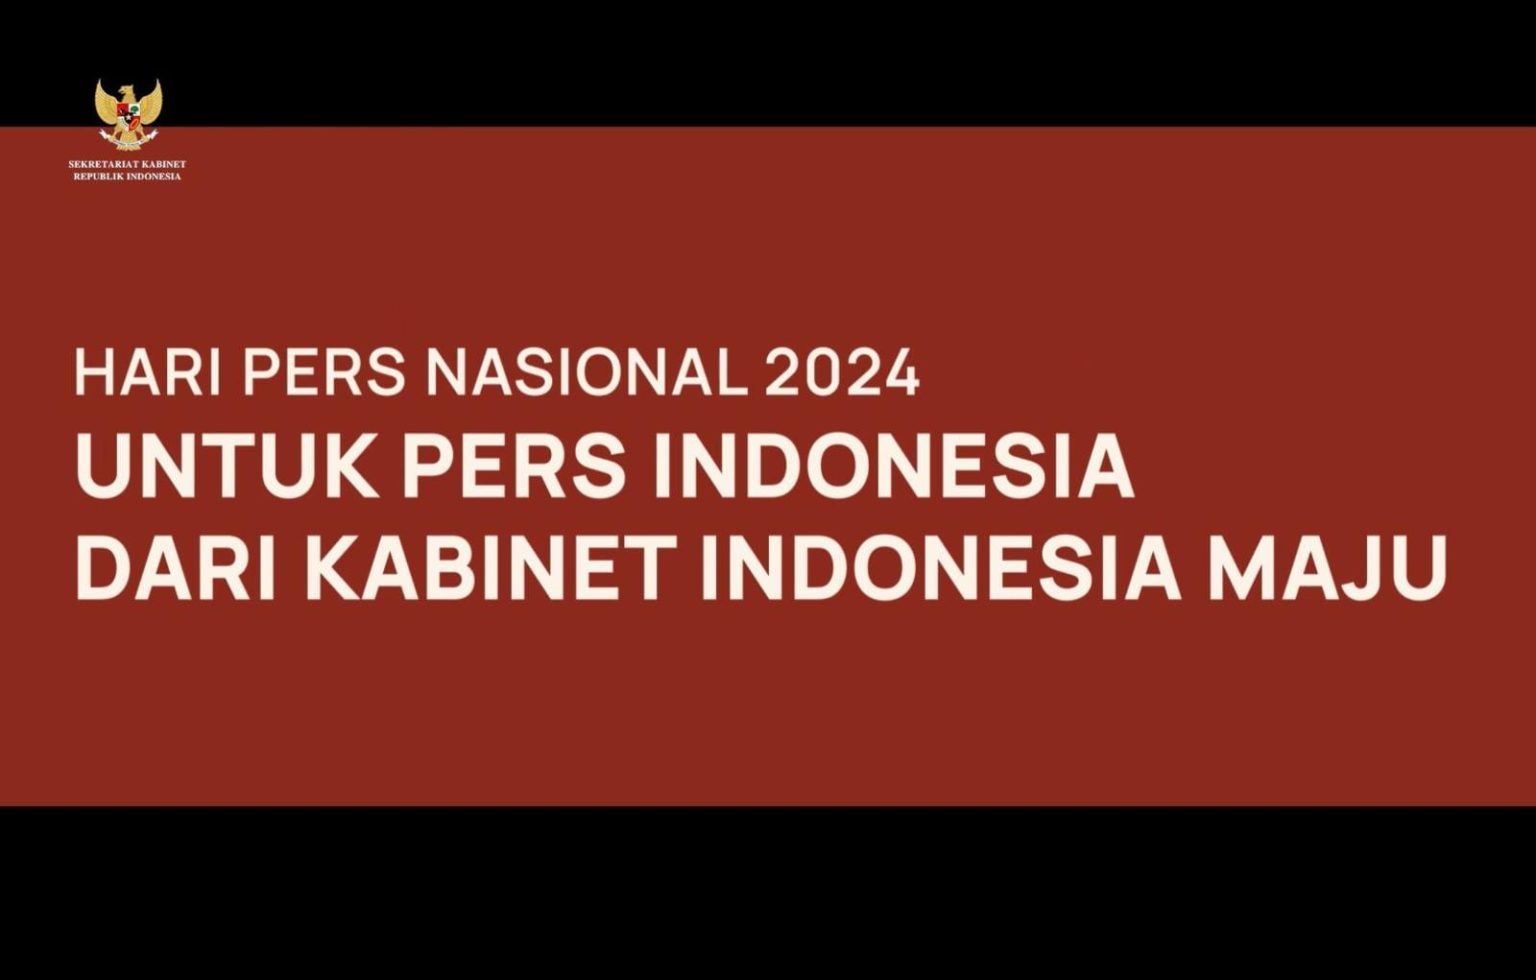 HPN 2024, Menteri Kabinet Indonesia Maju Sampaikan Apresiasi kepada Pers Indonesia